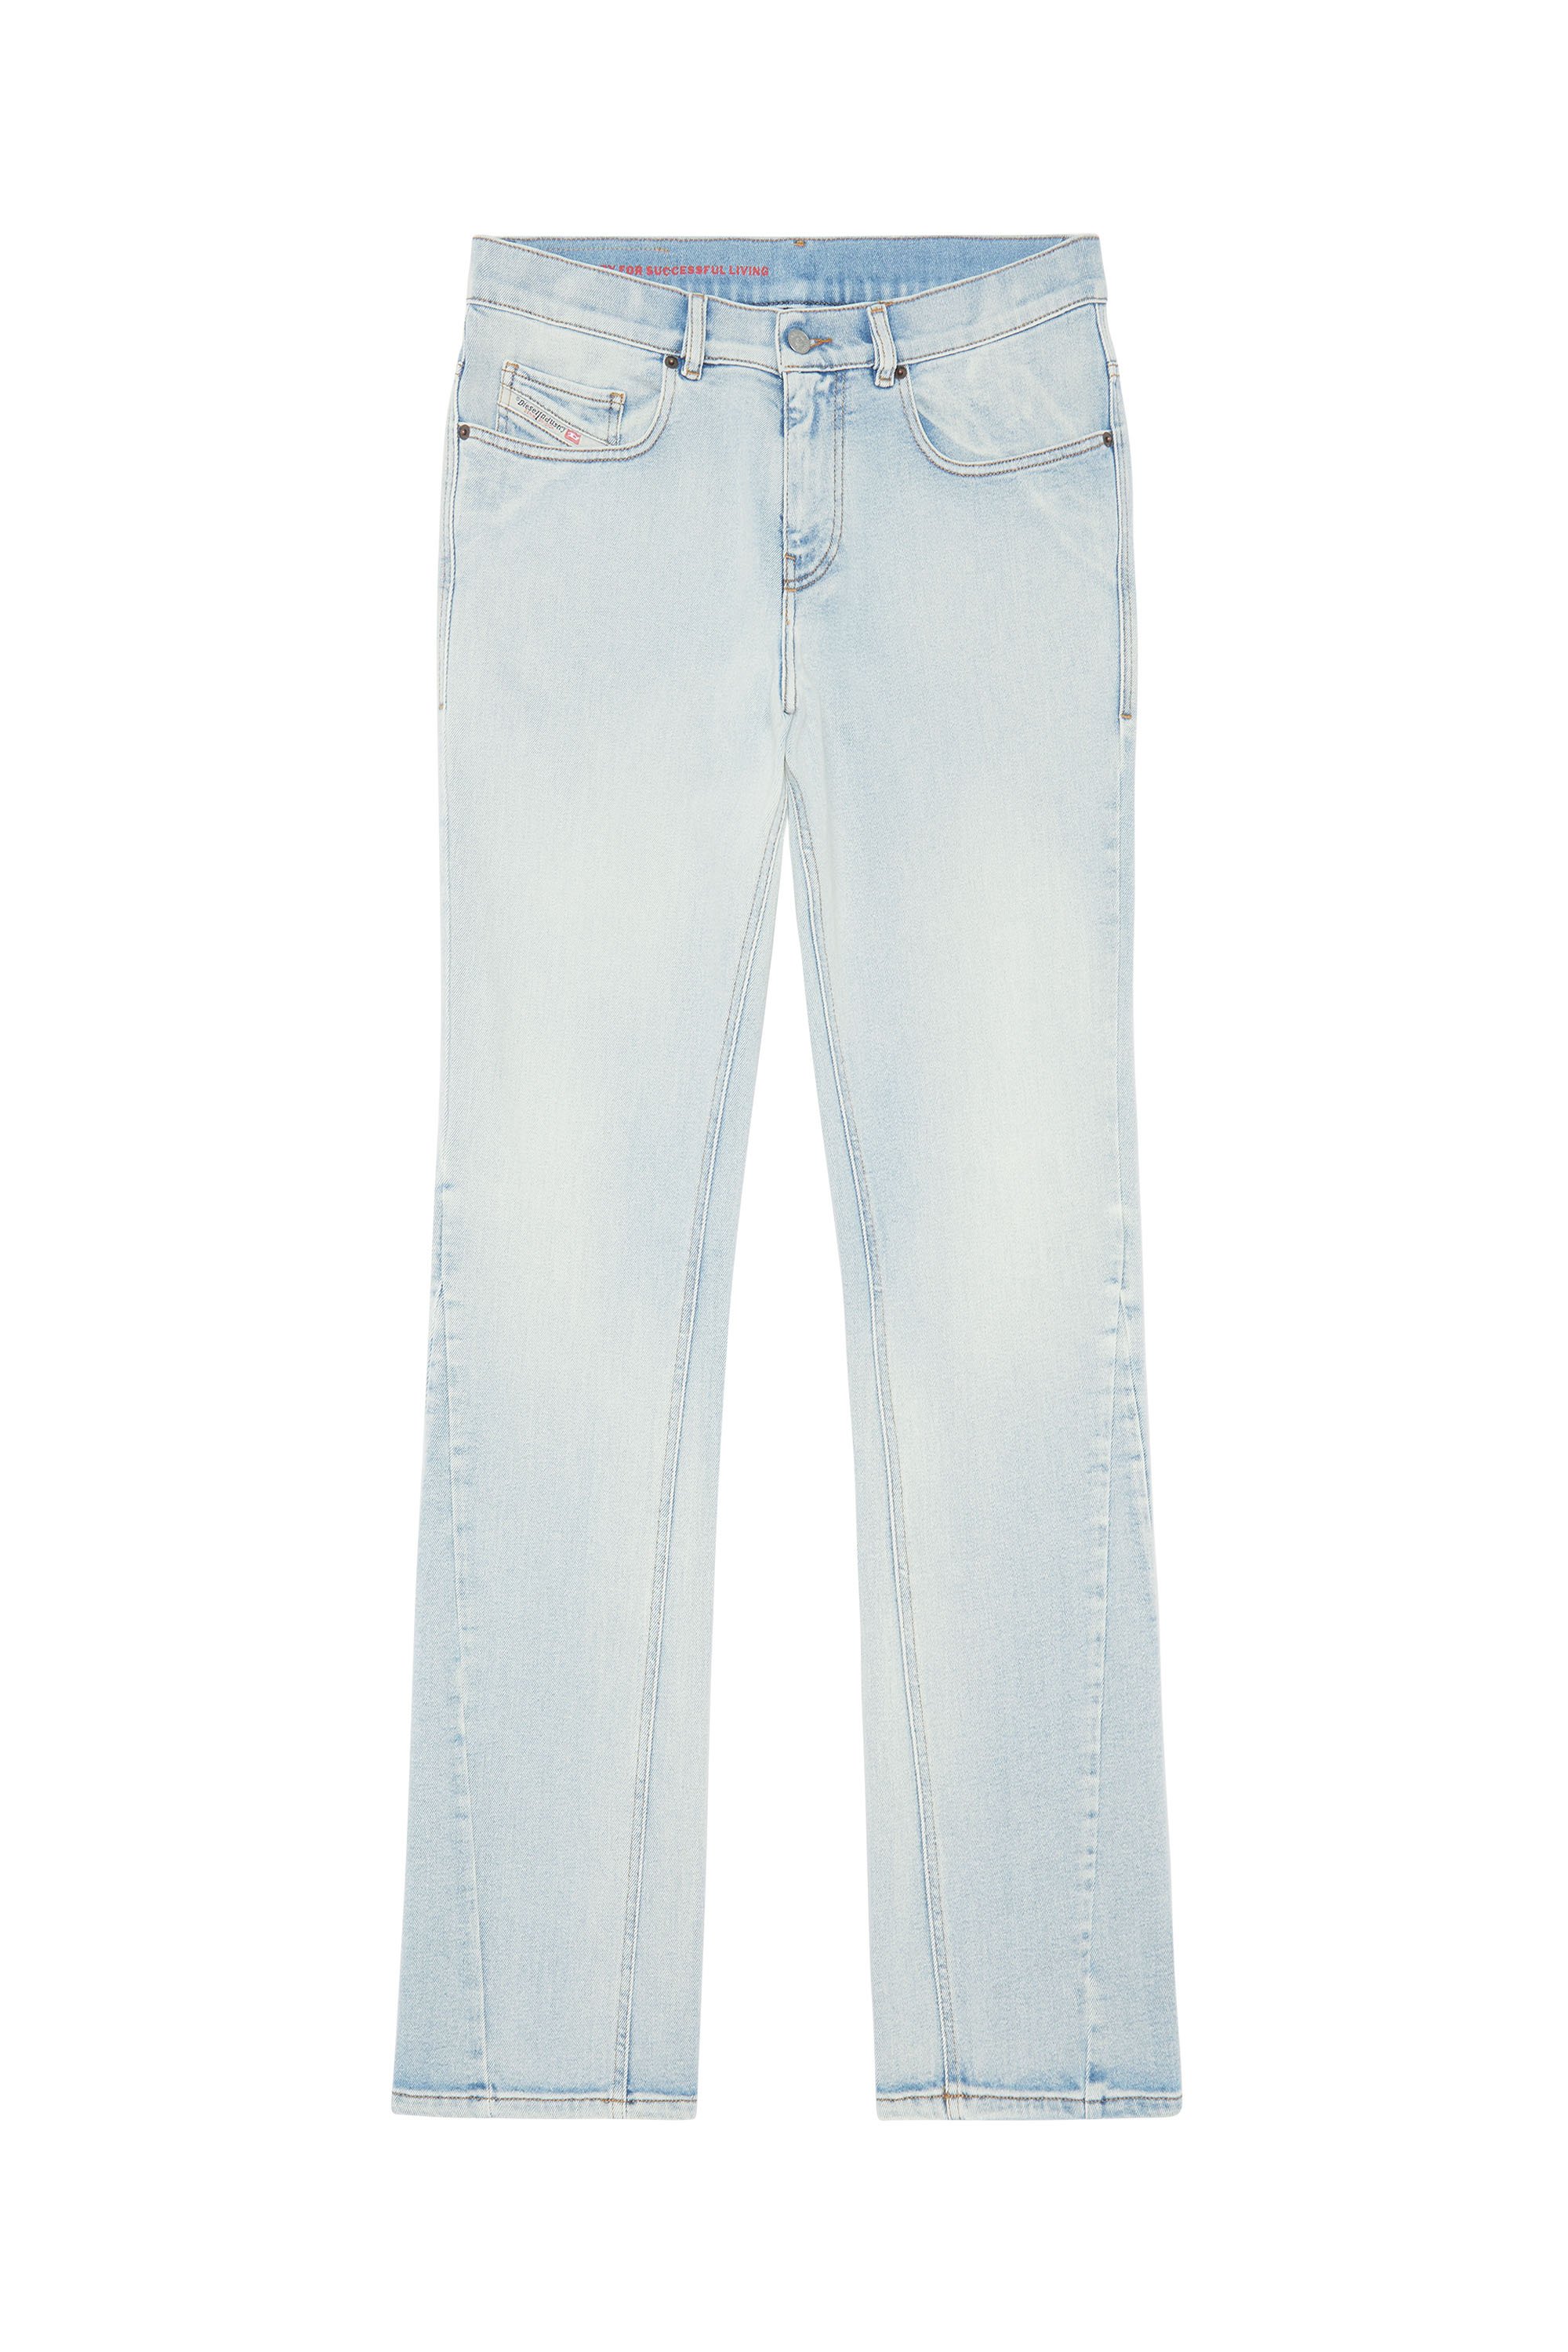 2021 D-VOCS 09C08 Bootcut Jeans, Light Blue - Jeans